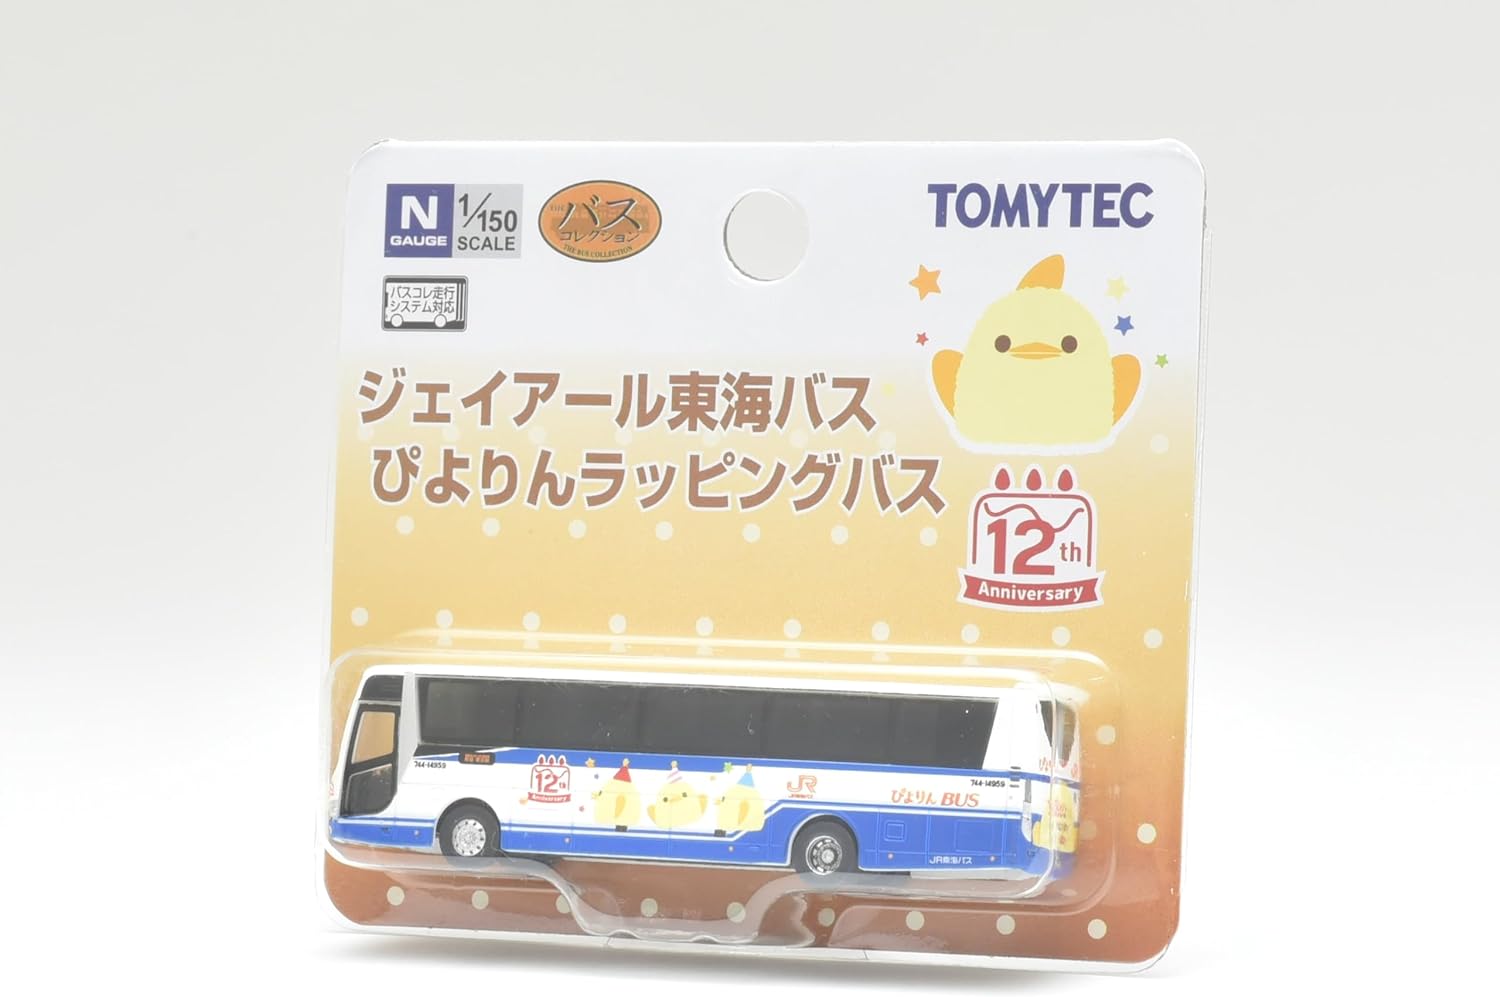 TOMYTEC The Bus Collection JR Tokai Bus Pyyori Wrapping Bus - BanzaiHobby